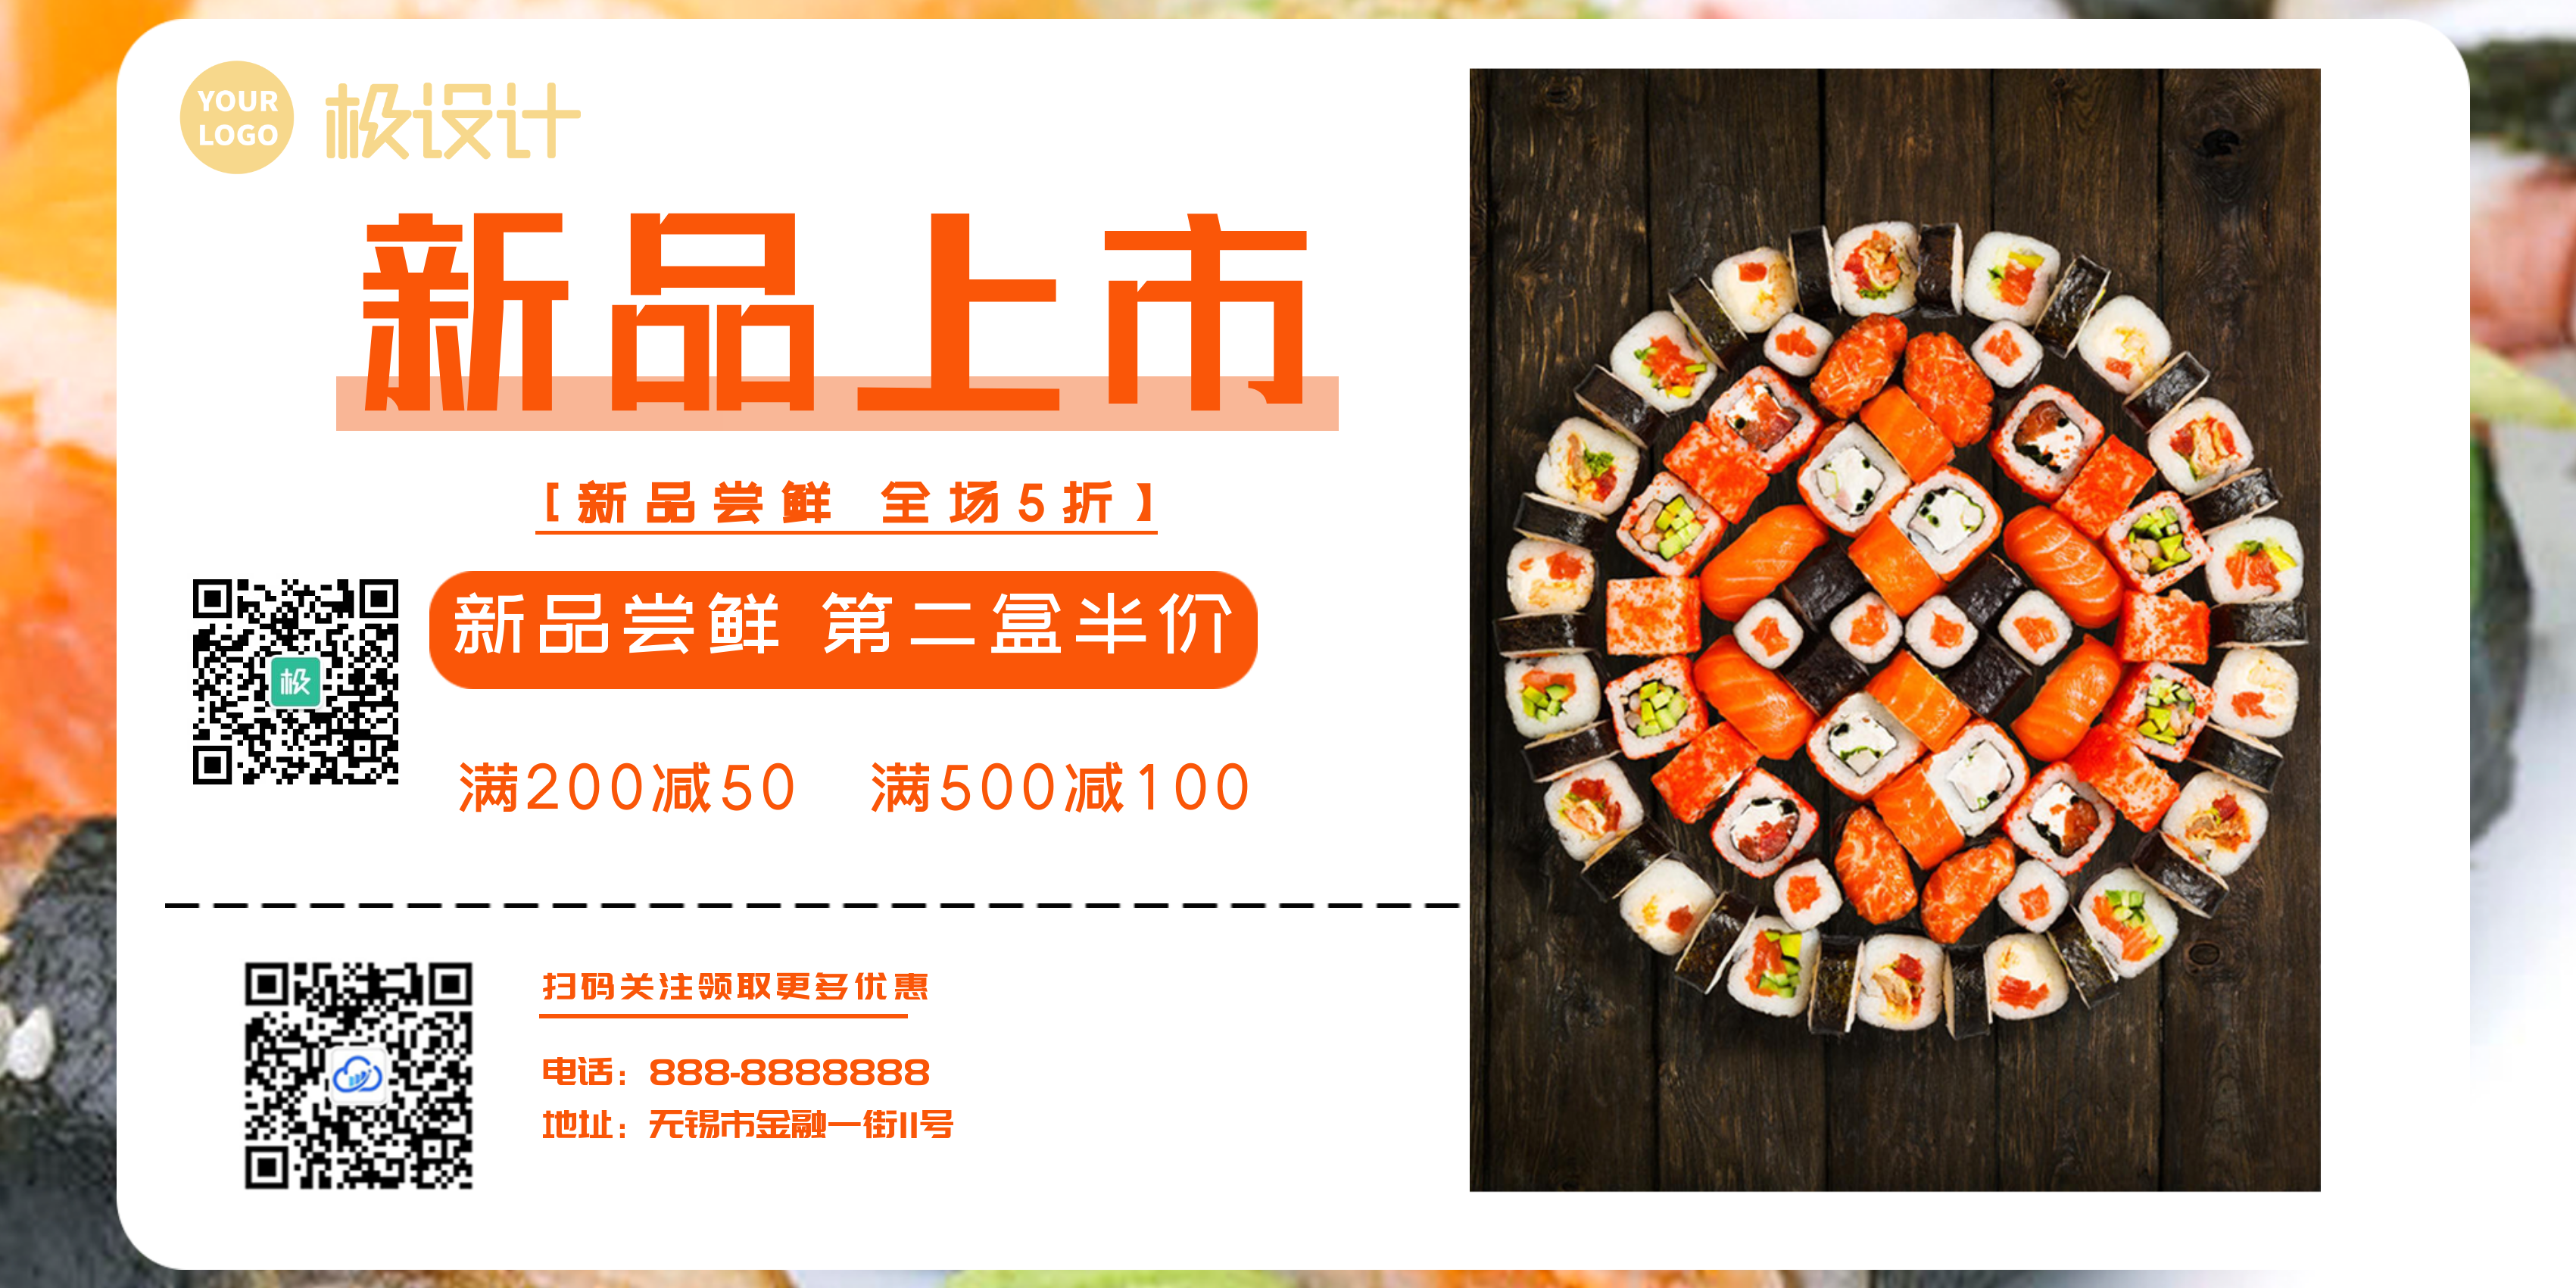 寿司新品上市五折尝鲜第二盒半价